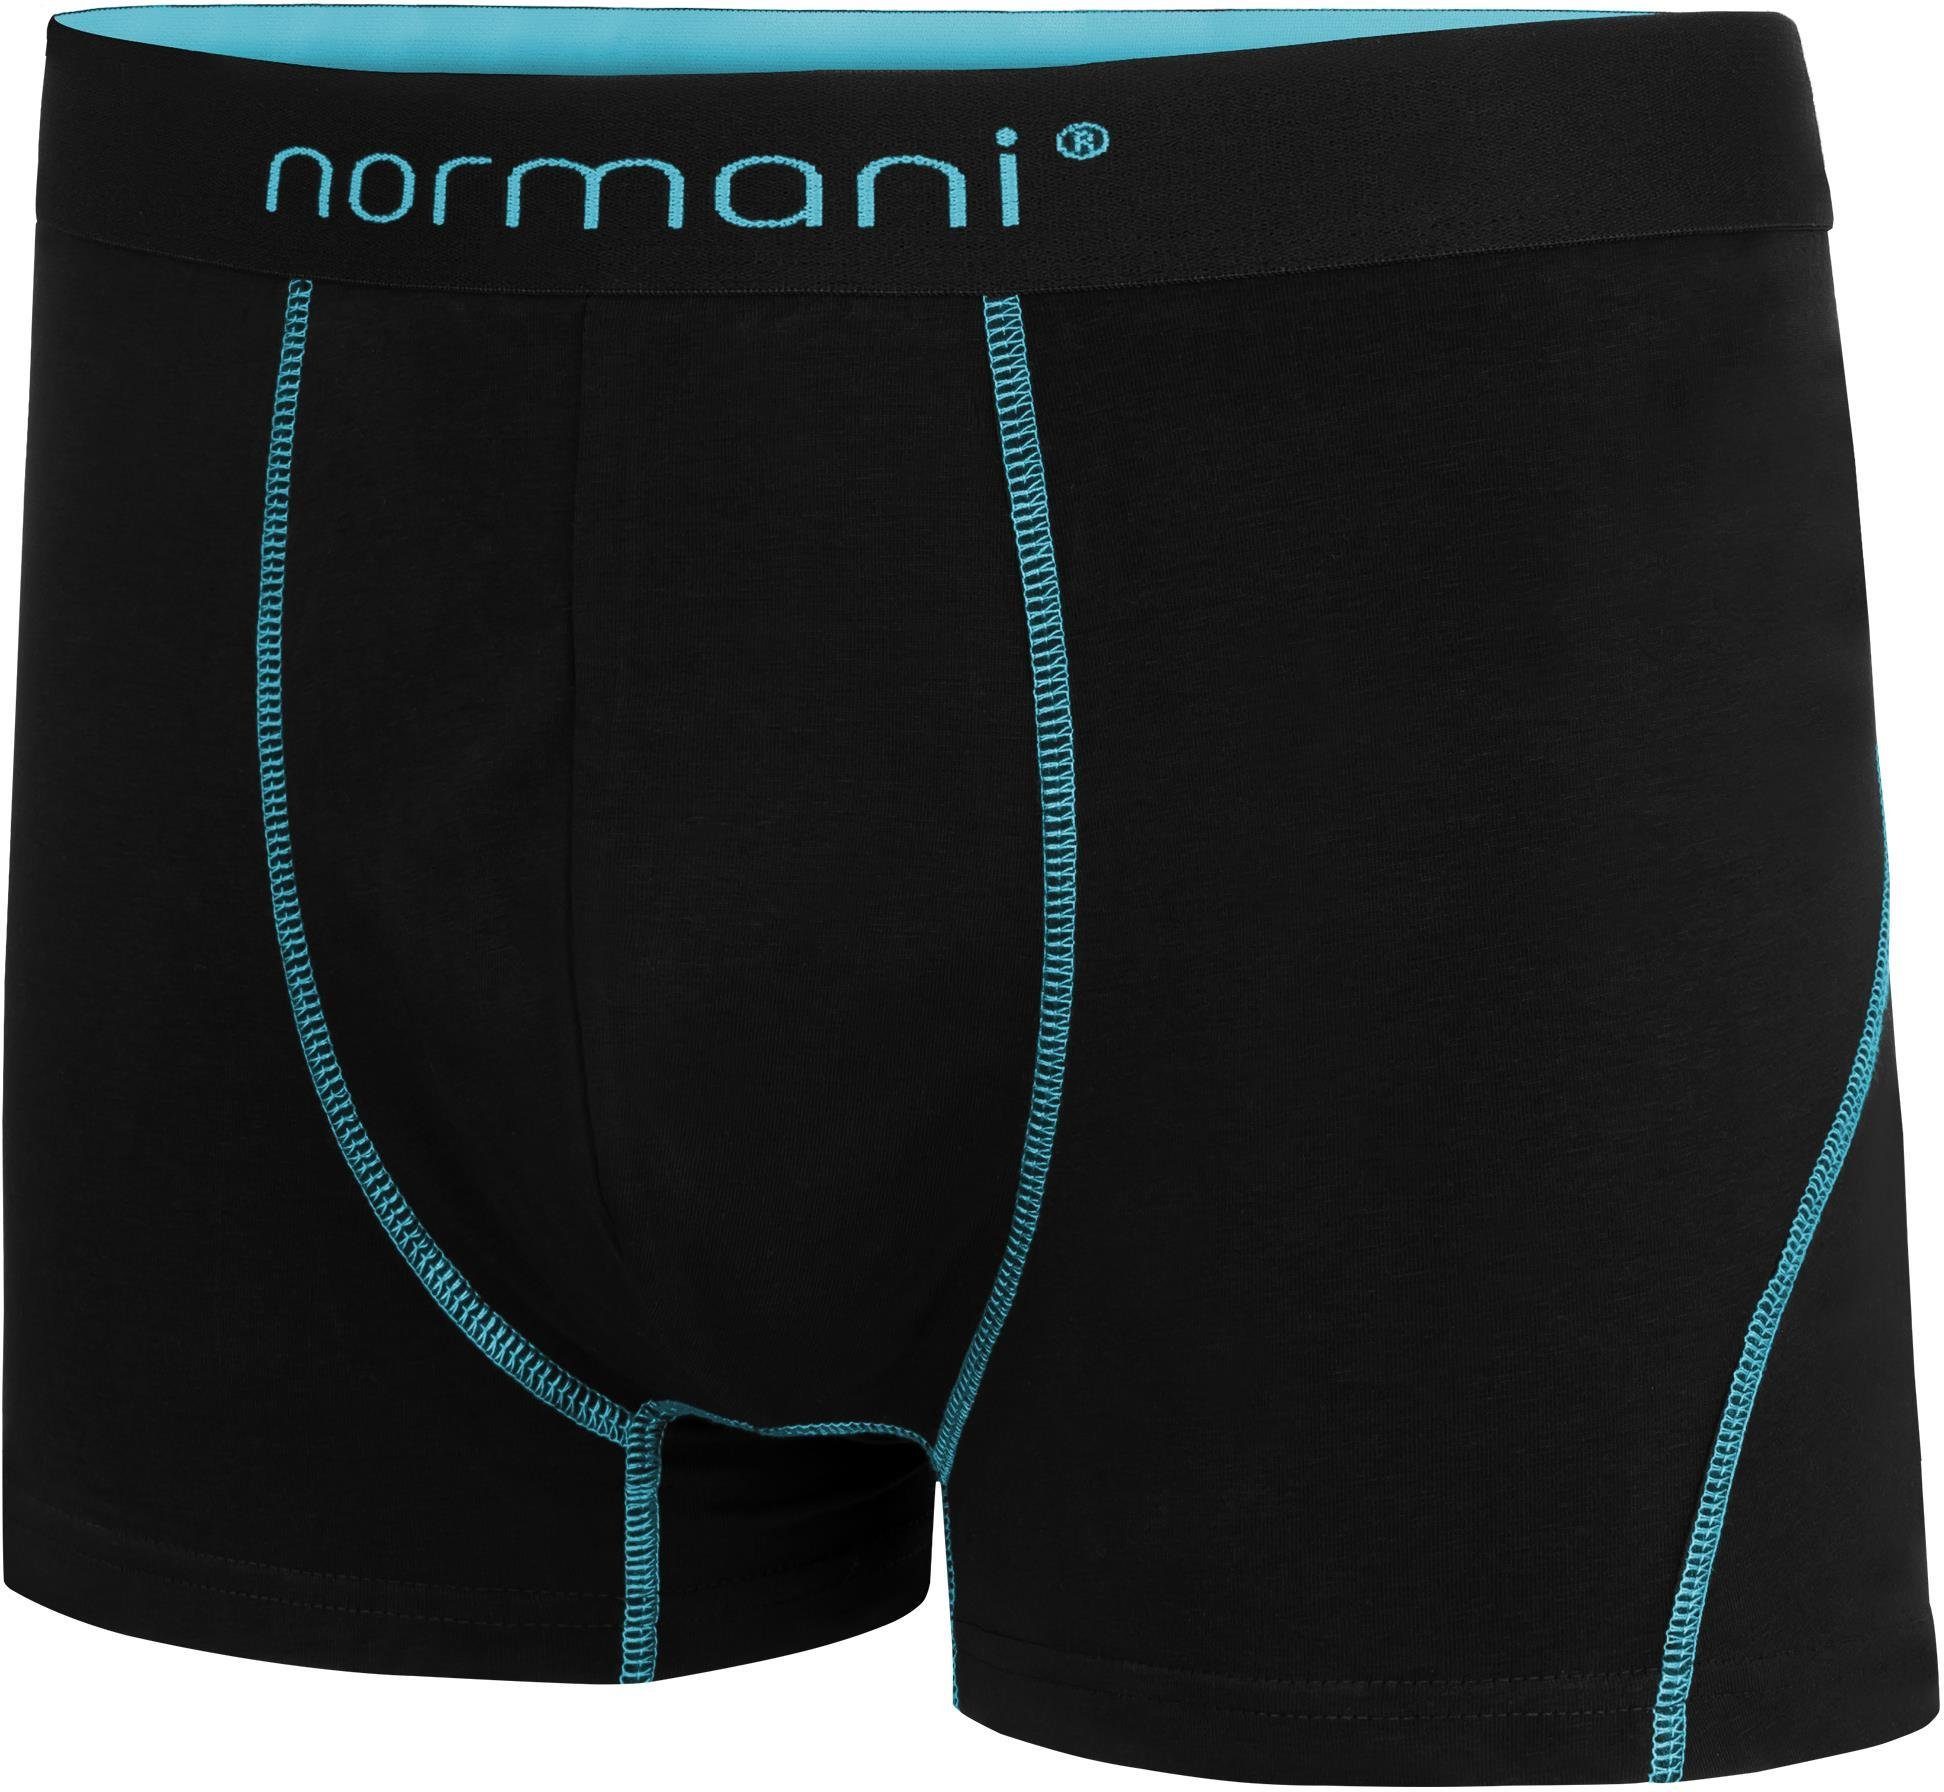 normani Boxershorts aus x Herren für atmungsaktiver Baumwolle 12 Türkis Baumwoll-Boxershorts Männer Unterhose